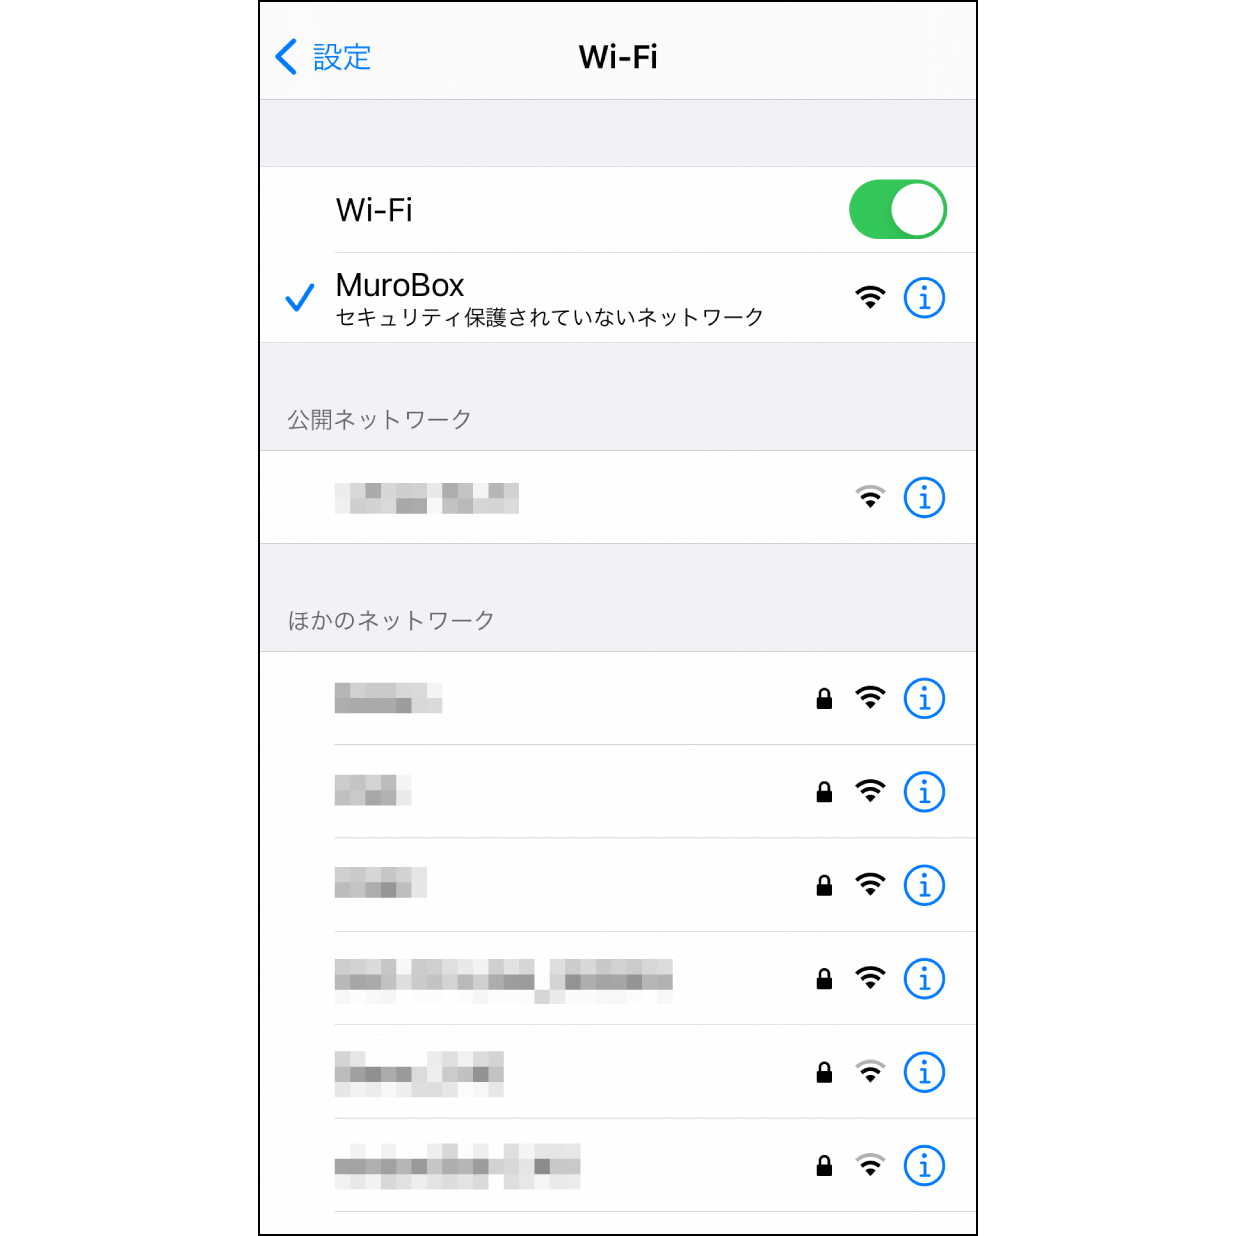 5. Muro Box Wi-Fiに接続iPhoneの設定ページからWi-Fi接続を確認し、「Muro Box」を選択。